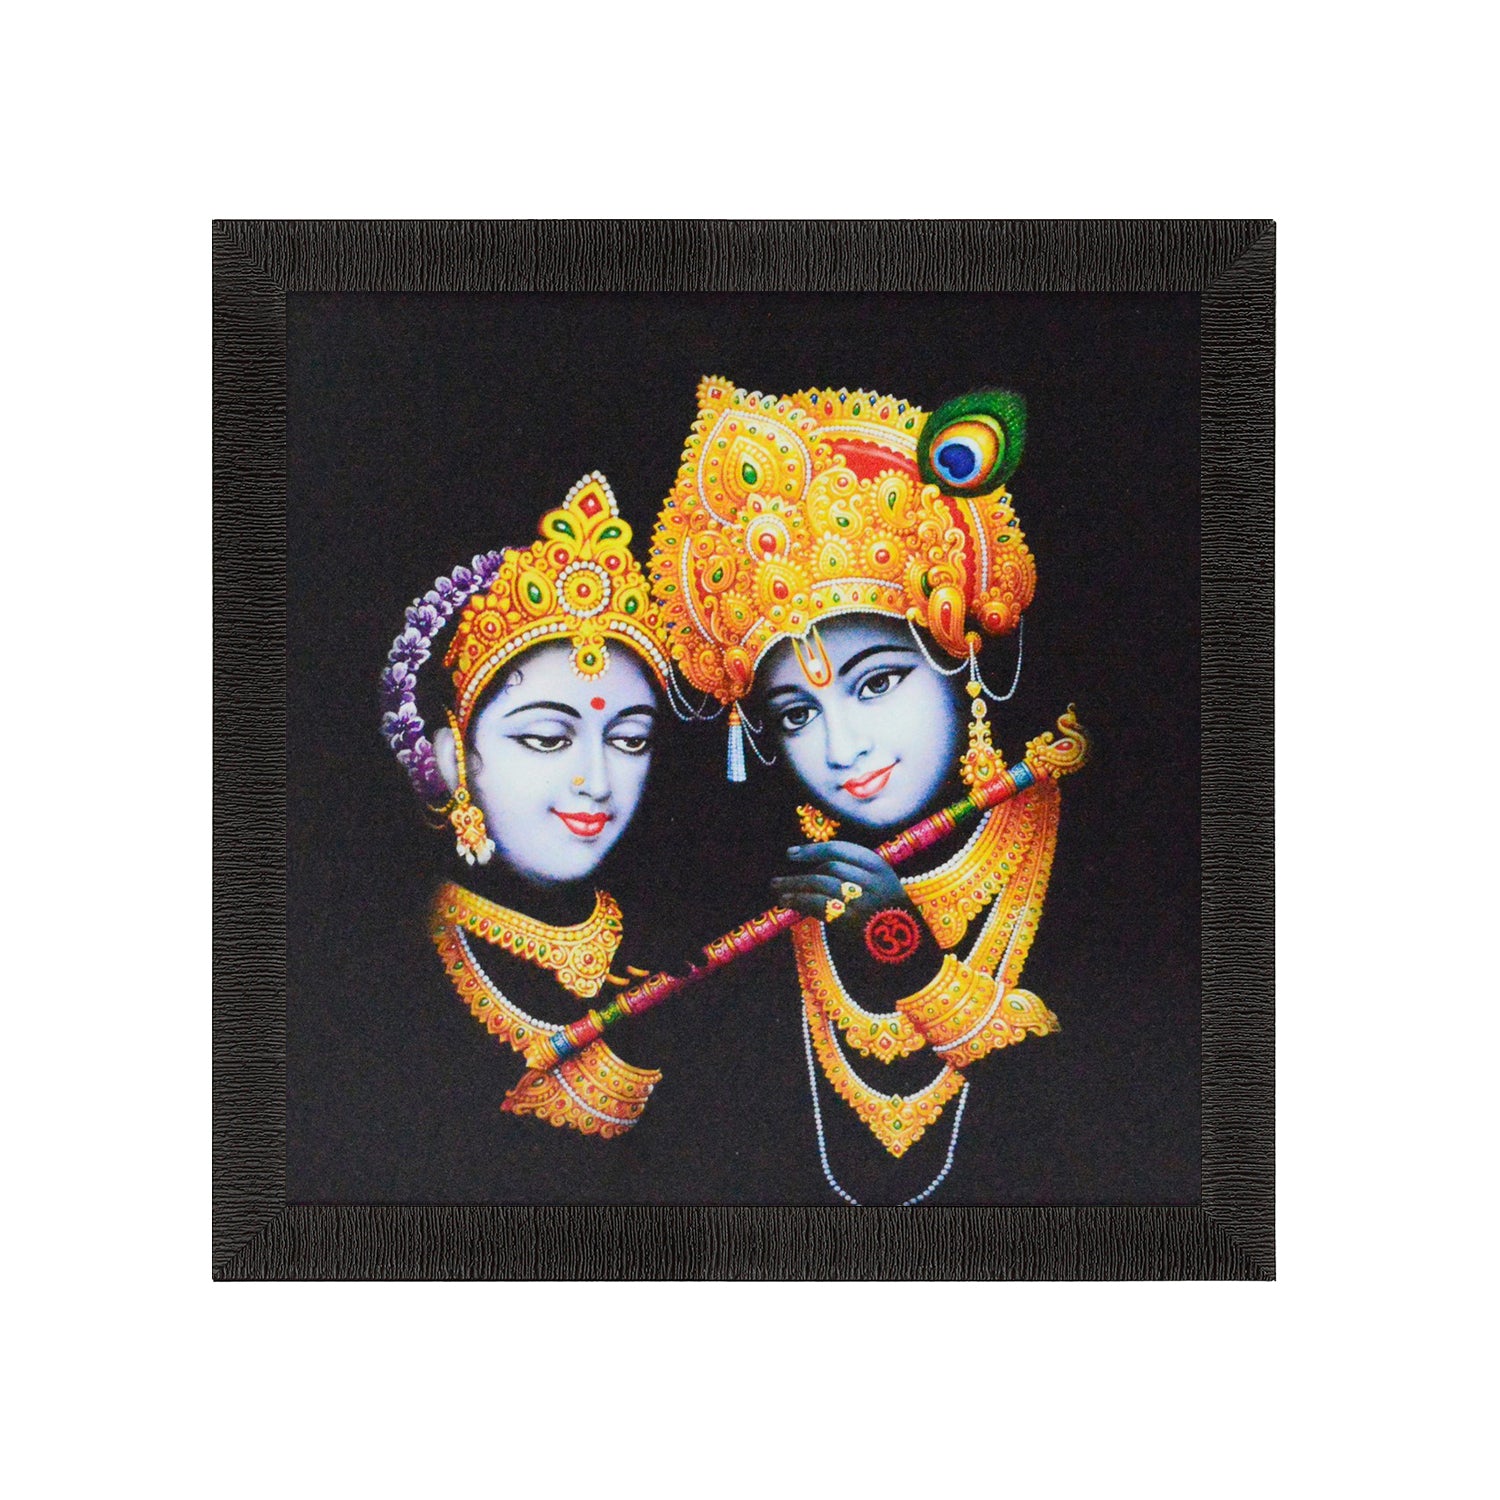 Radha Krishna playing Flute Satin Matt Texture UV Art Painting